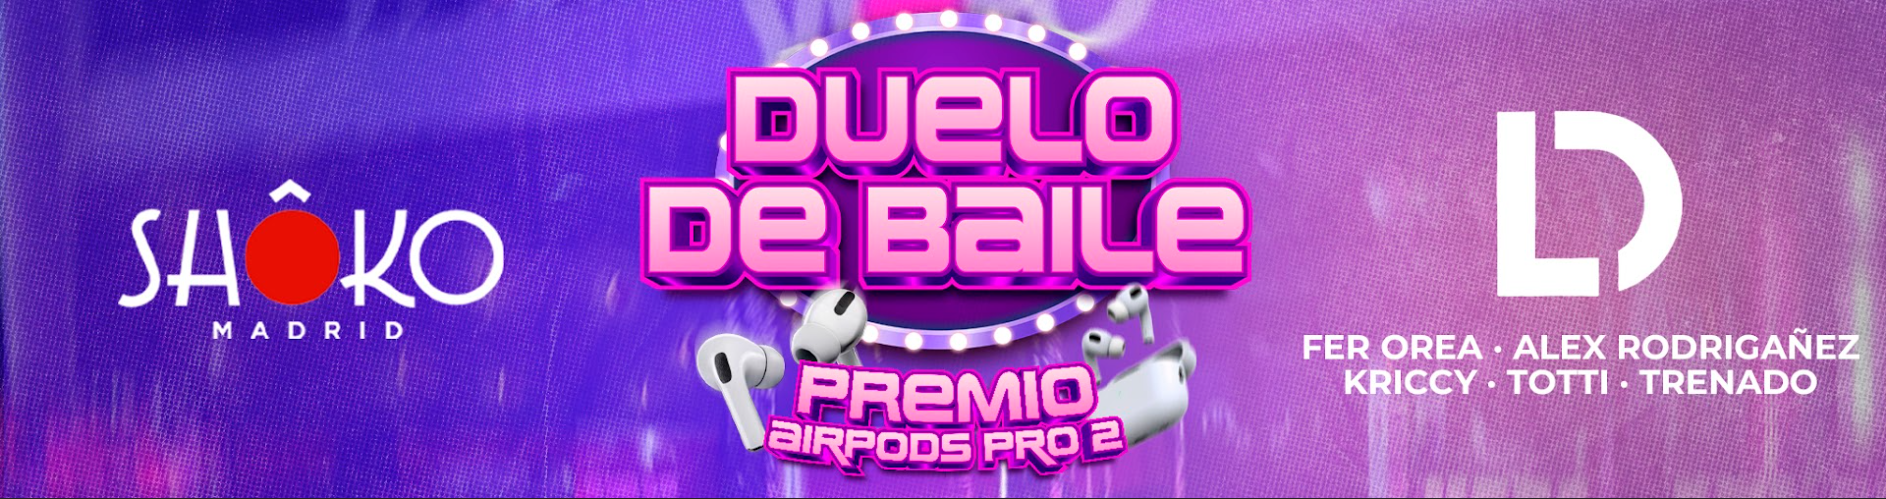 Duelo de Baile + Airpods Pro 2🕺